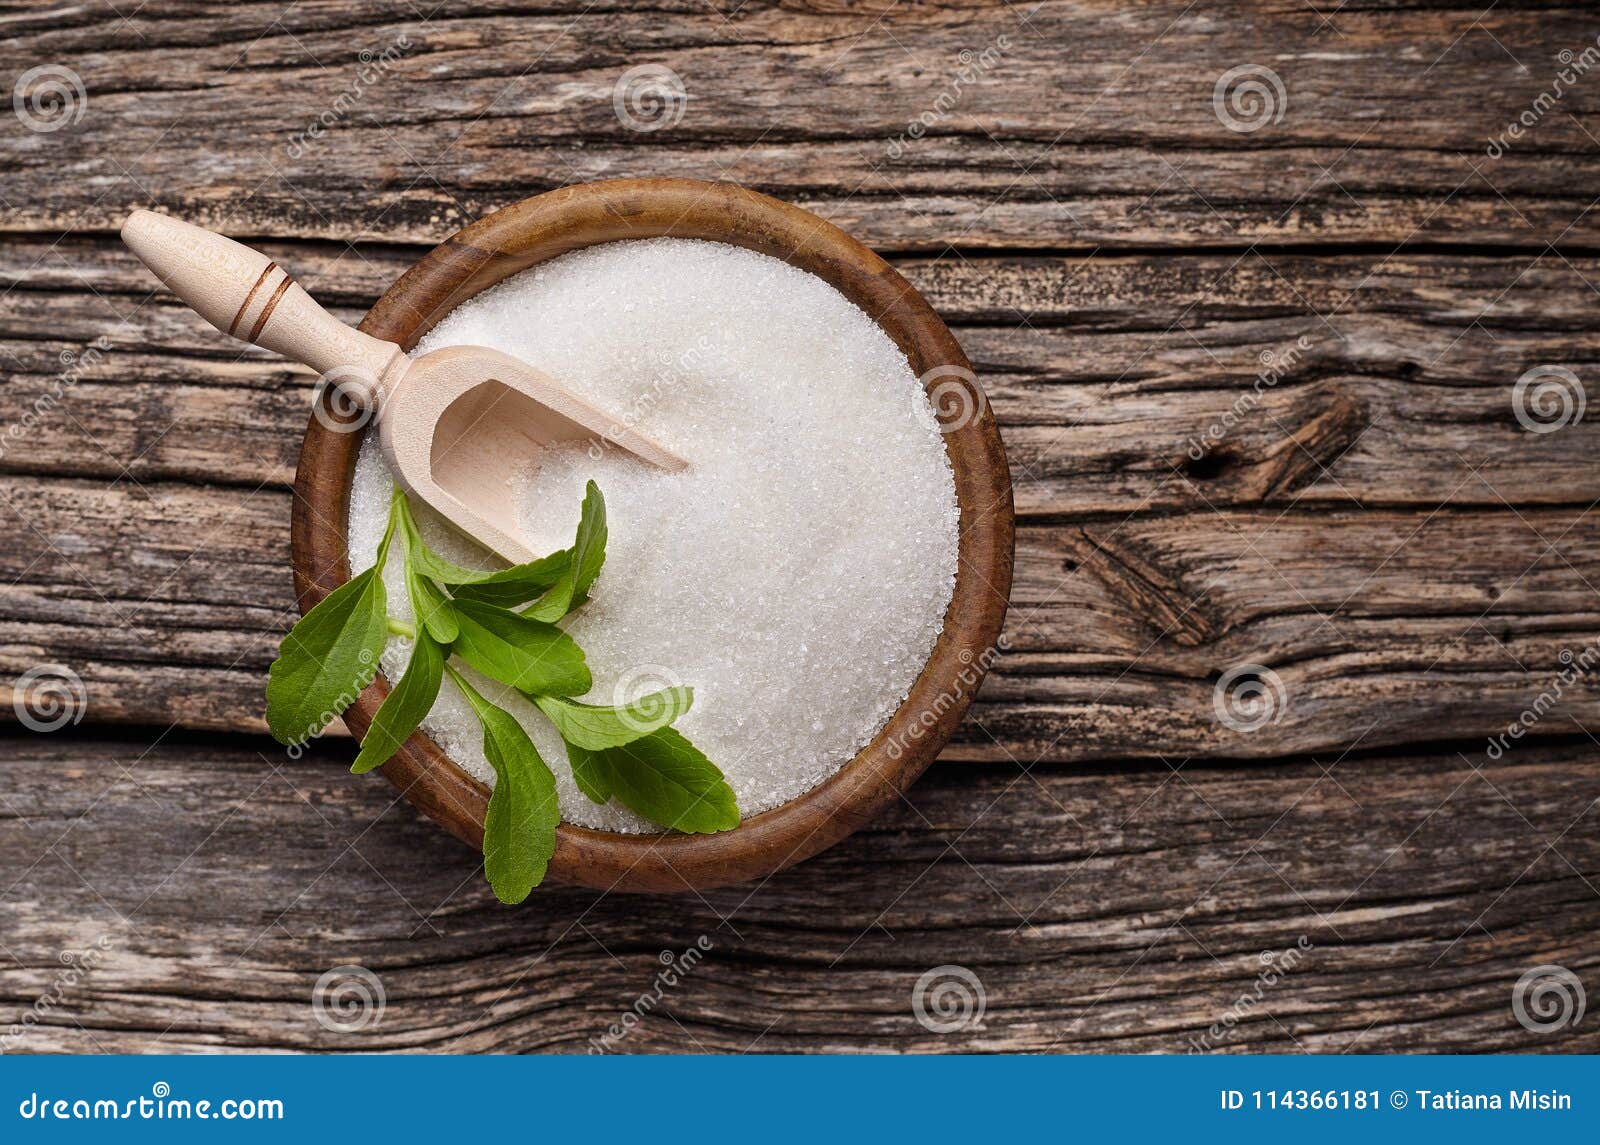 stevia rebaudiana, sweet leaf sugar substitute in woode